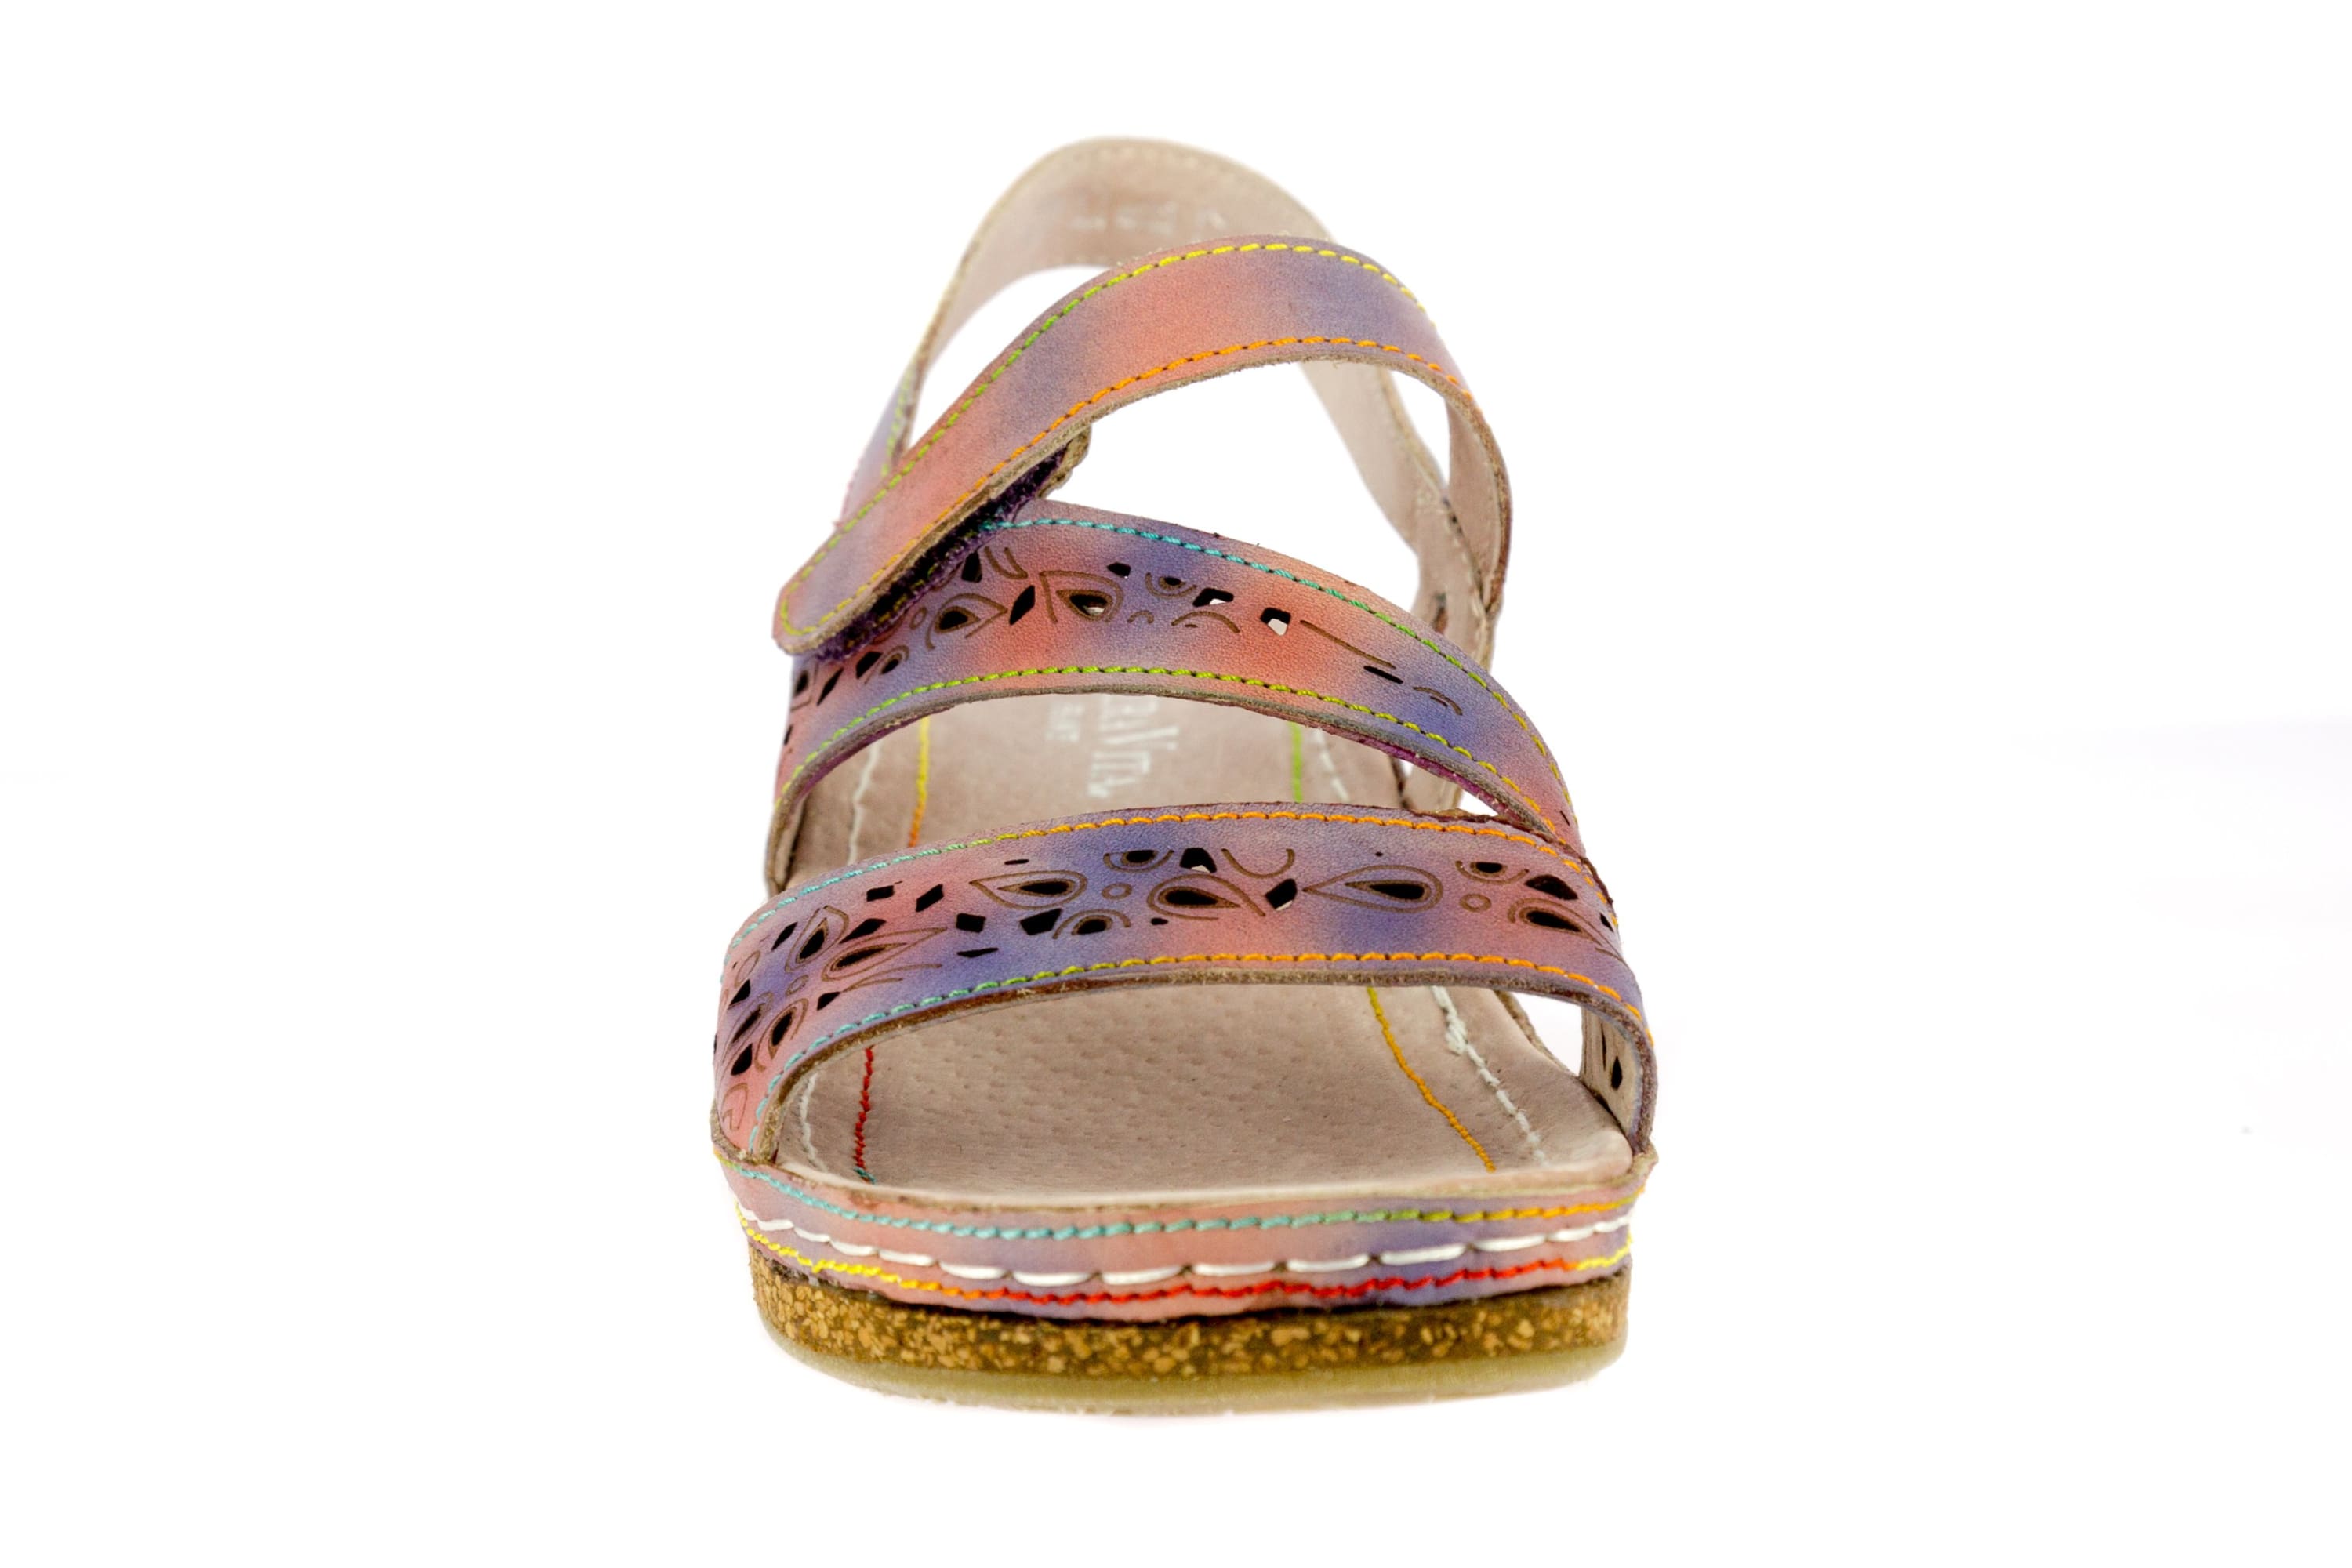 Shoe FACRAHO02 - Sandal